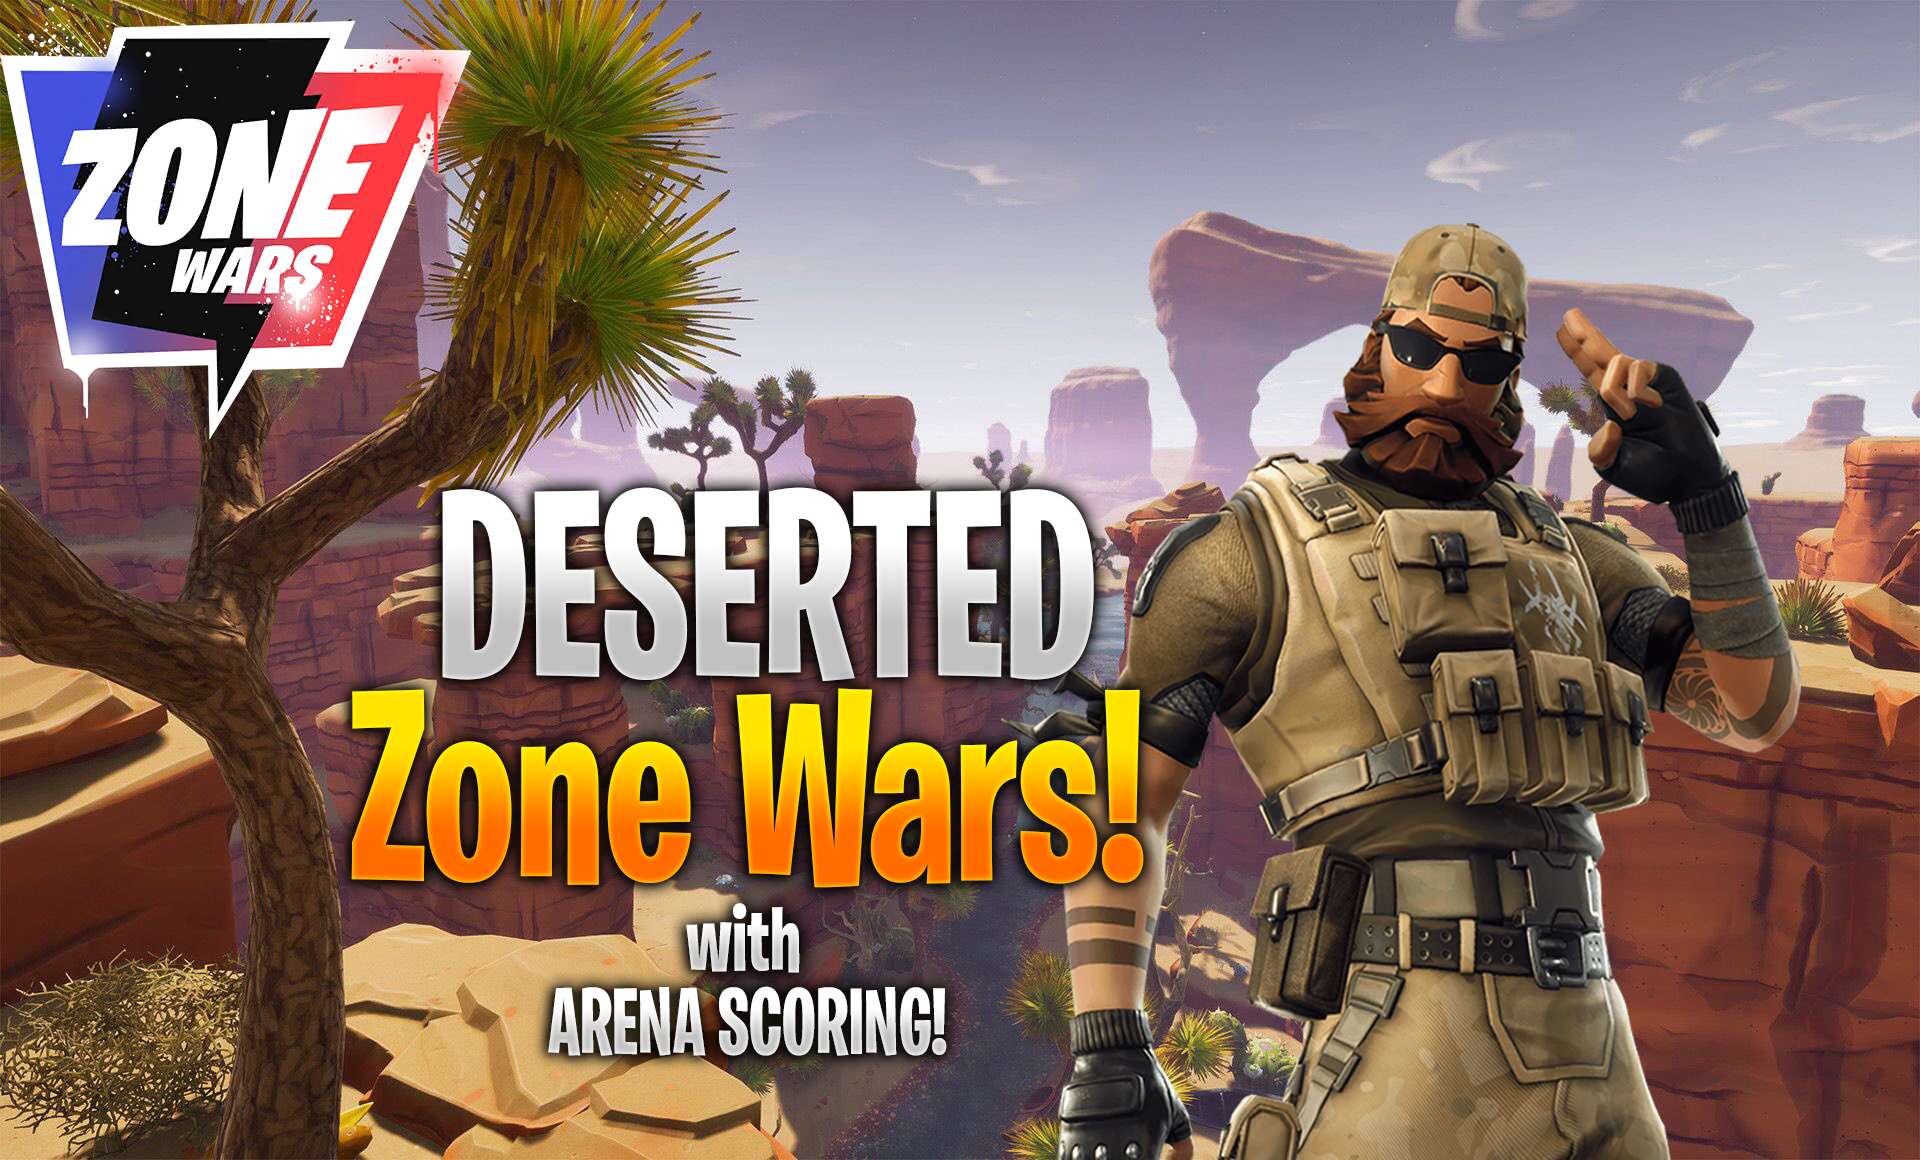 DESERTED ZONE WARS!